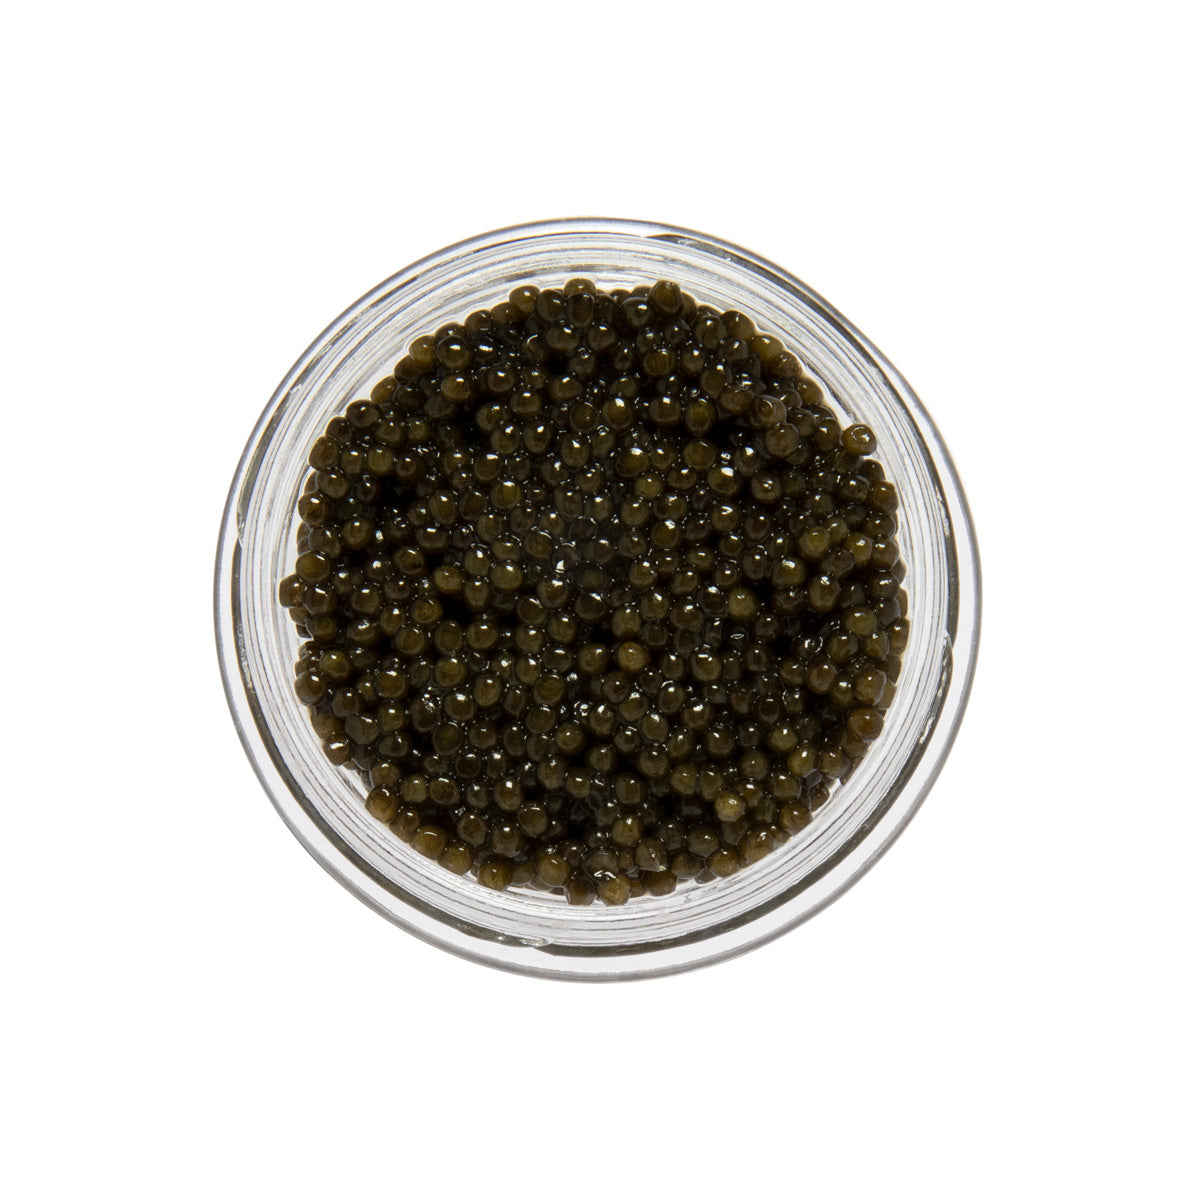 Caviar Star Amber Kaluga Hybrid Sturgeon Caviar